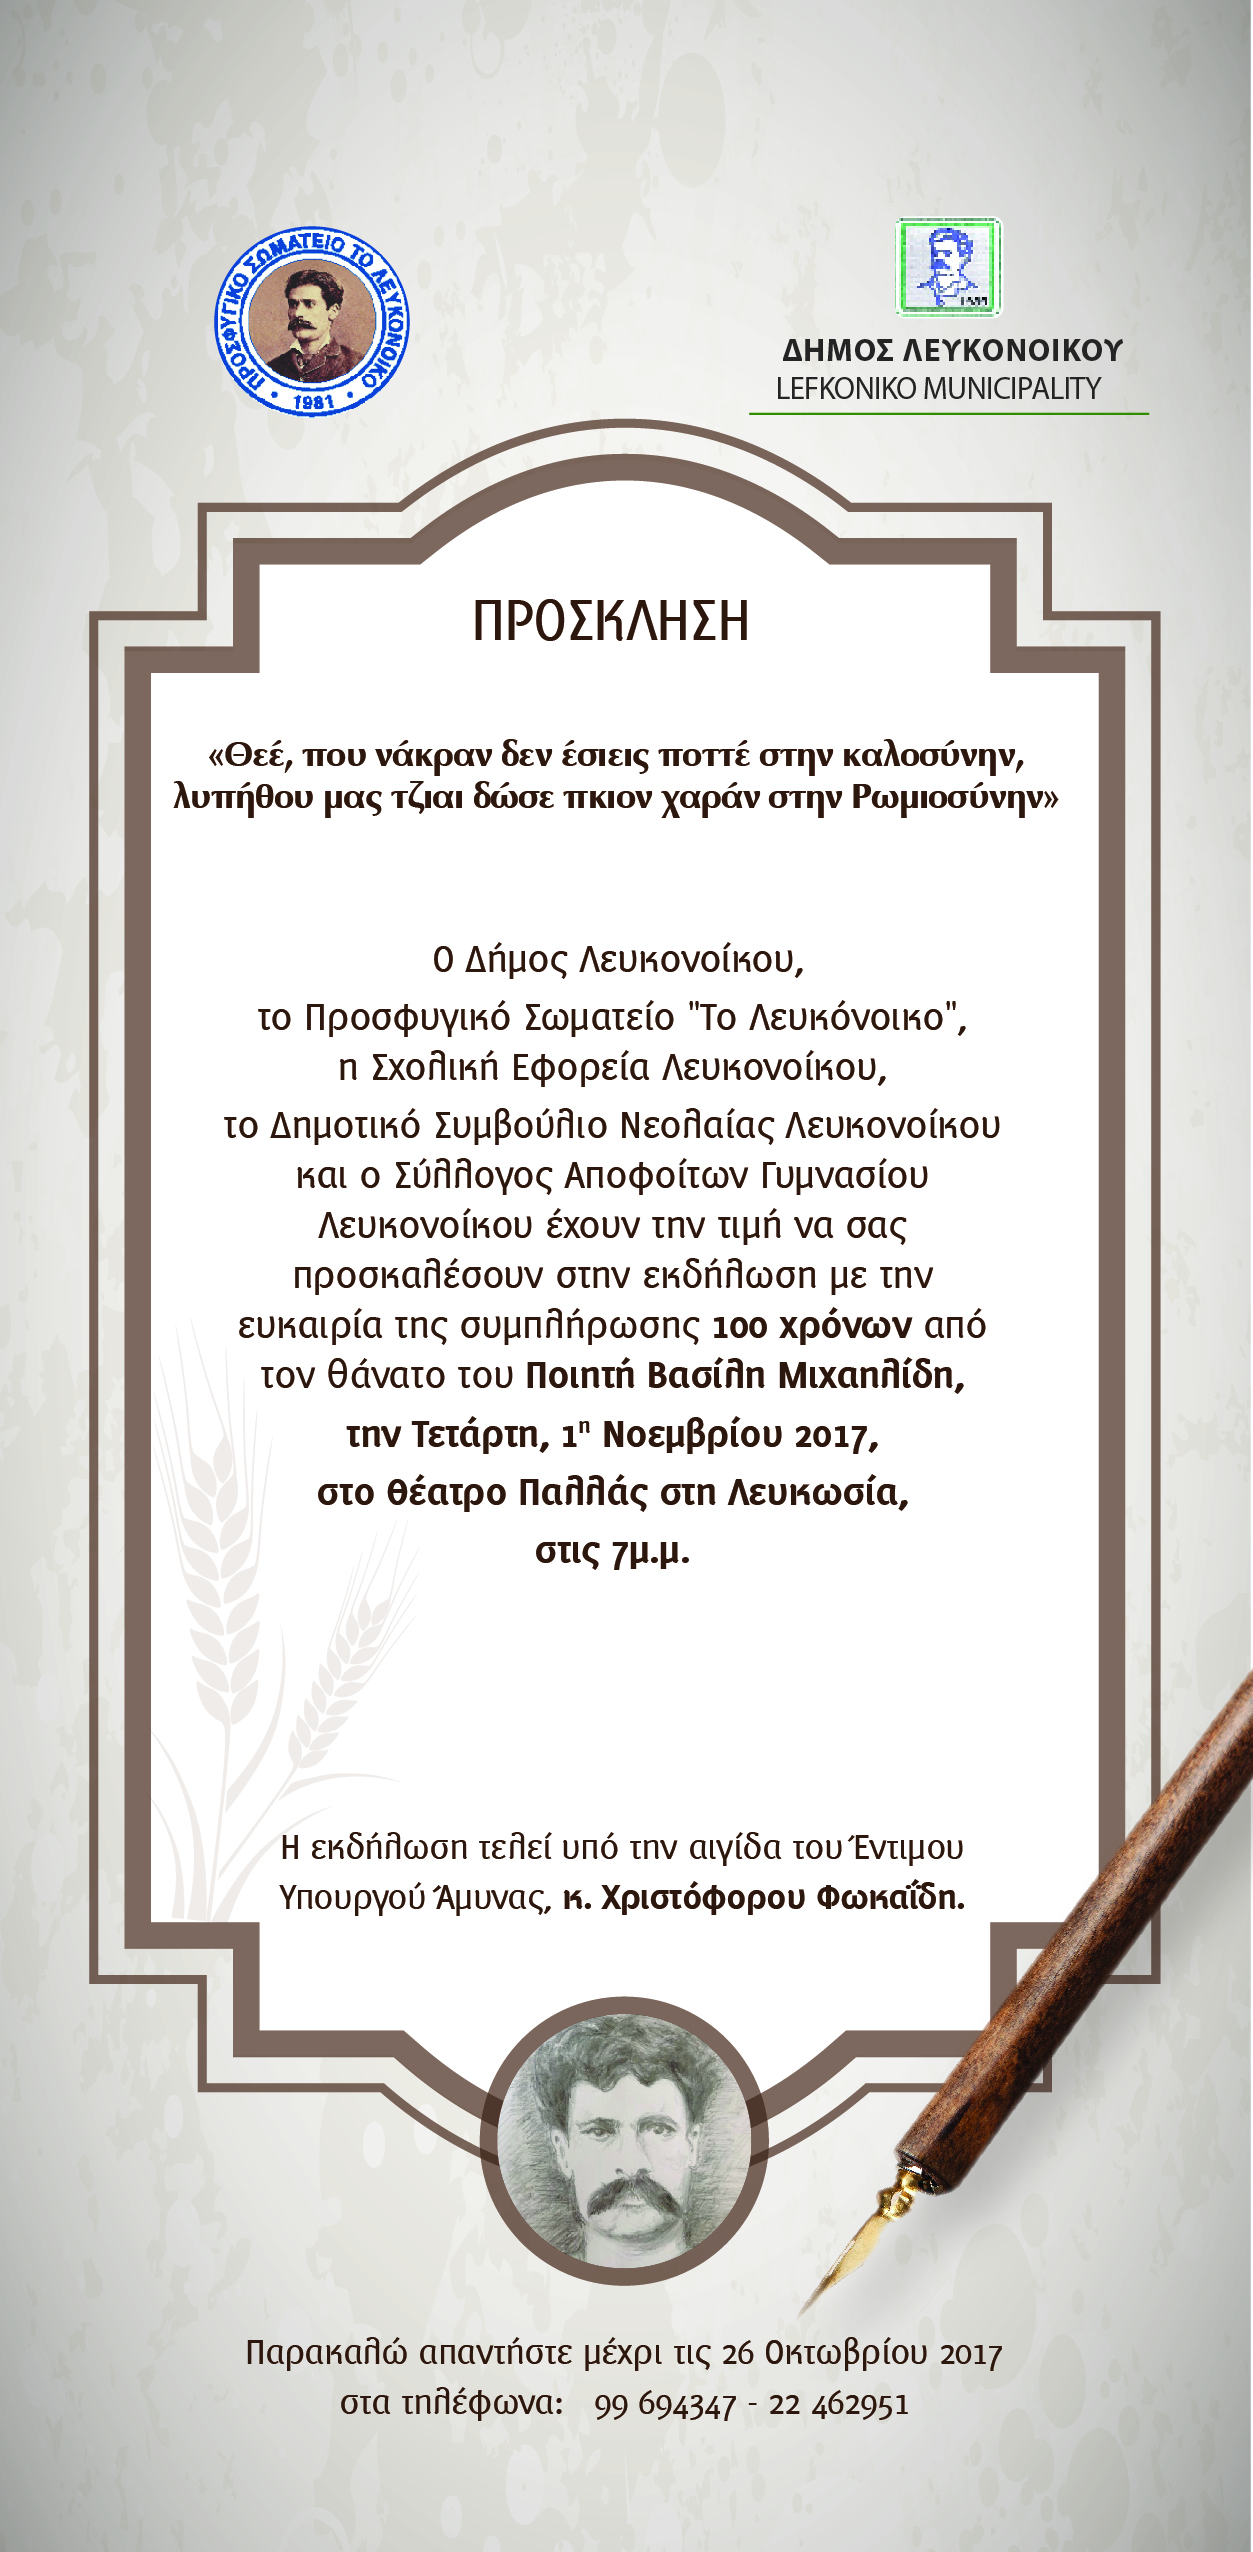 5 Lefkoniko Municipality Invitation 21x10cm 01 1 Βασίλης Μιχαηλίδης, Ποίηση, Πολιτισμός, Χριστόφορος Φωκαΐδης